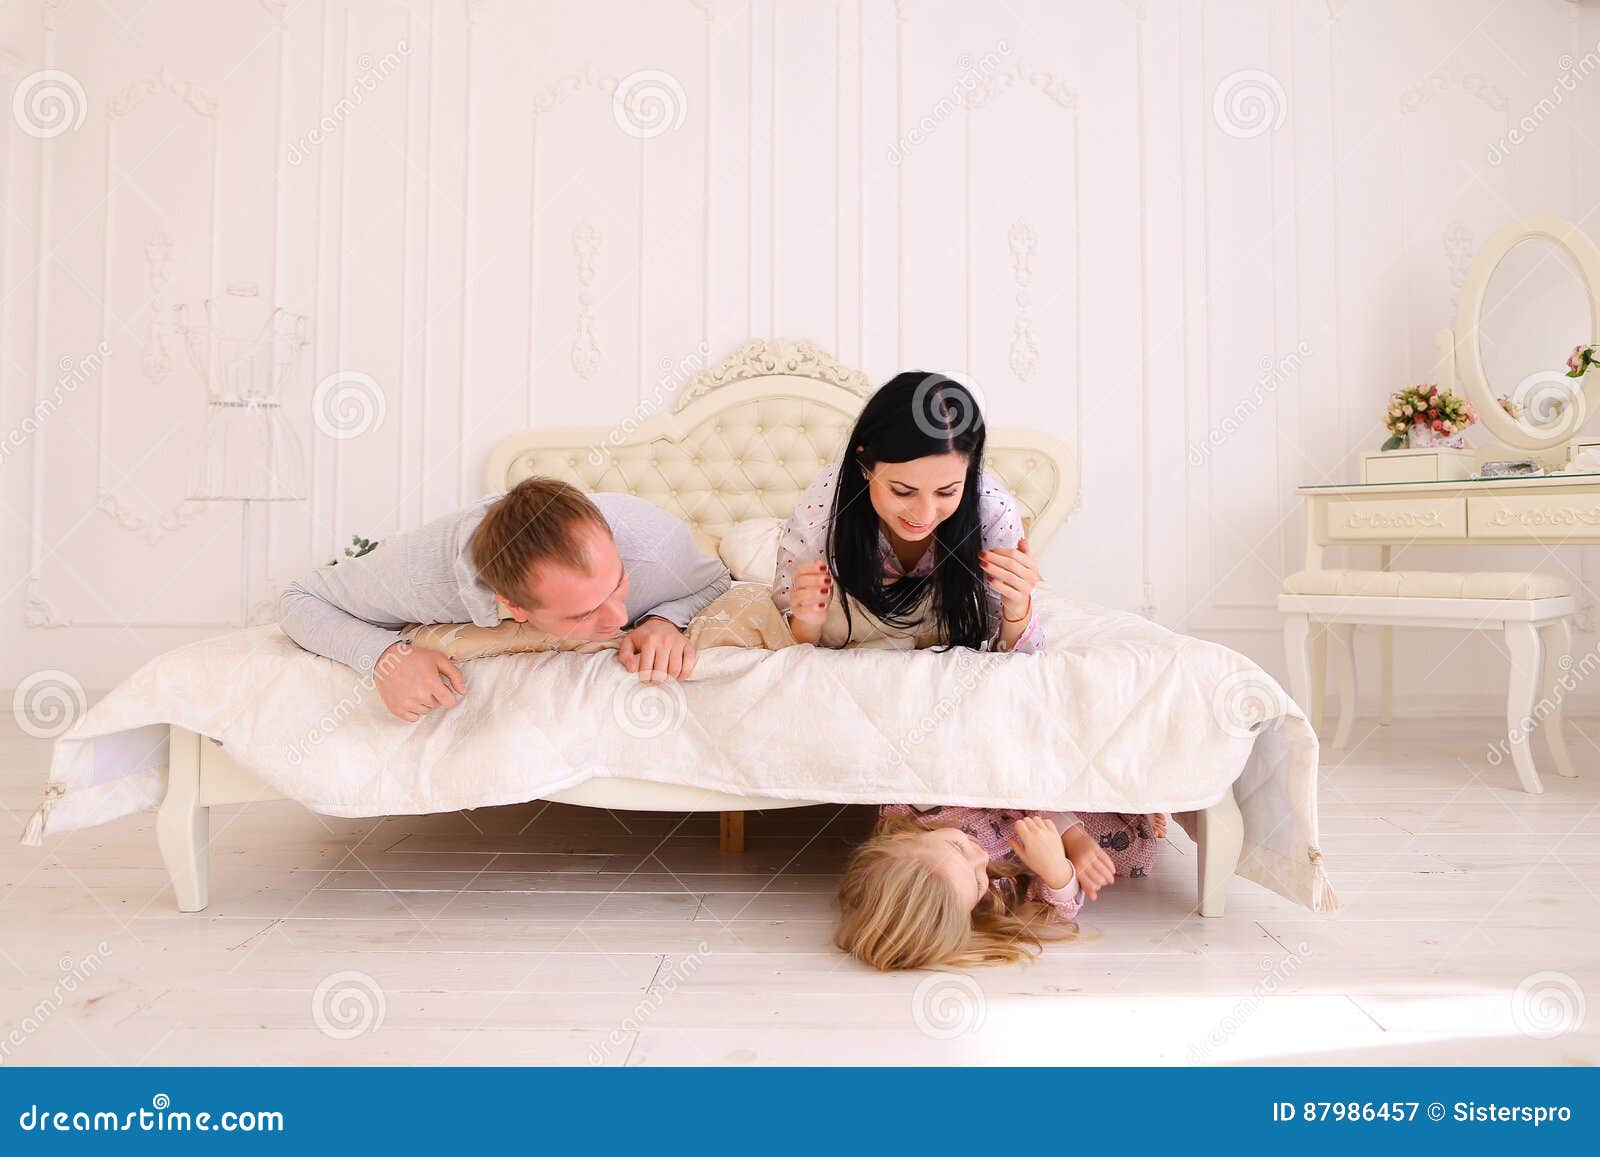 Hid under the bed. Мама с дочкой на кровати. Красивые красивые кровати для мамы и папы. Кровать момс. Связанная мама на кровати.